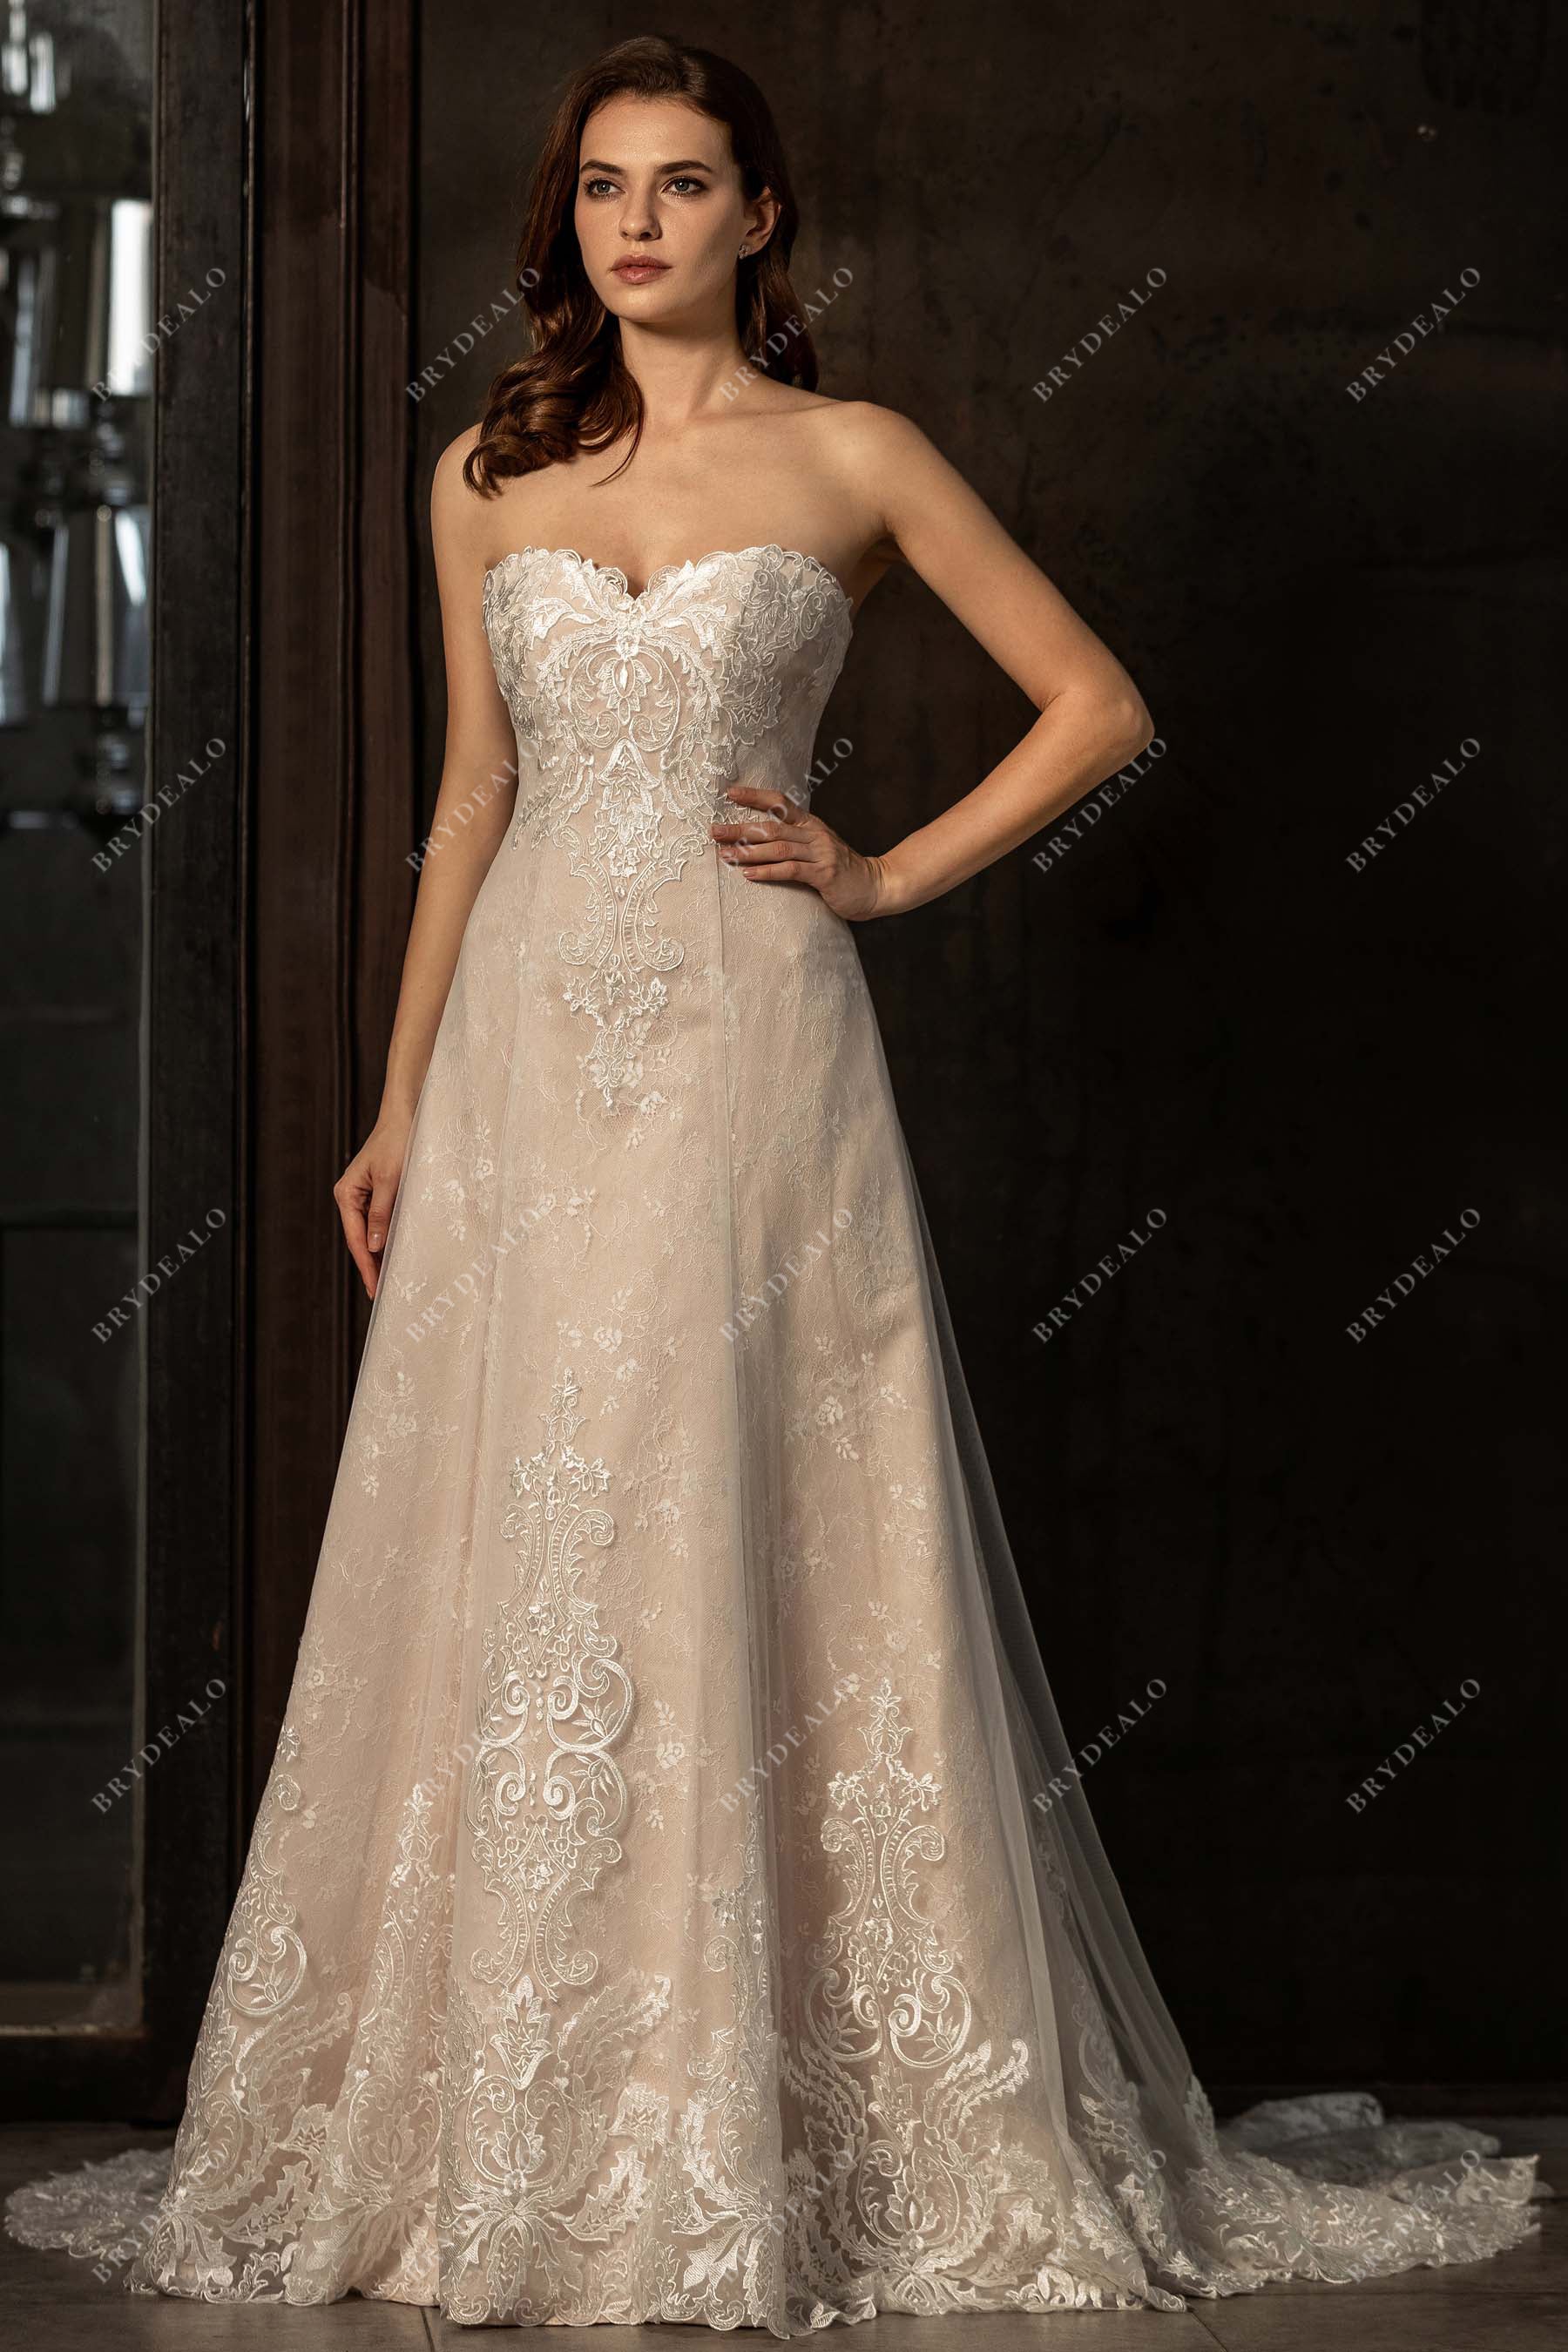 Strapless Sweetheart Neck Lace Chiffon Wedding Dress